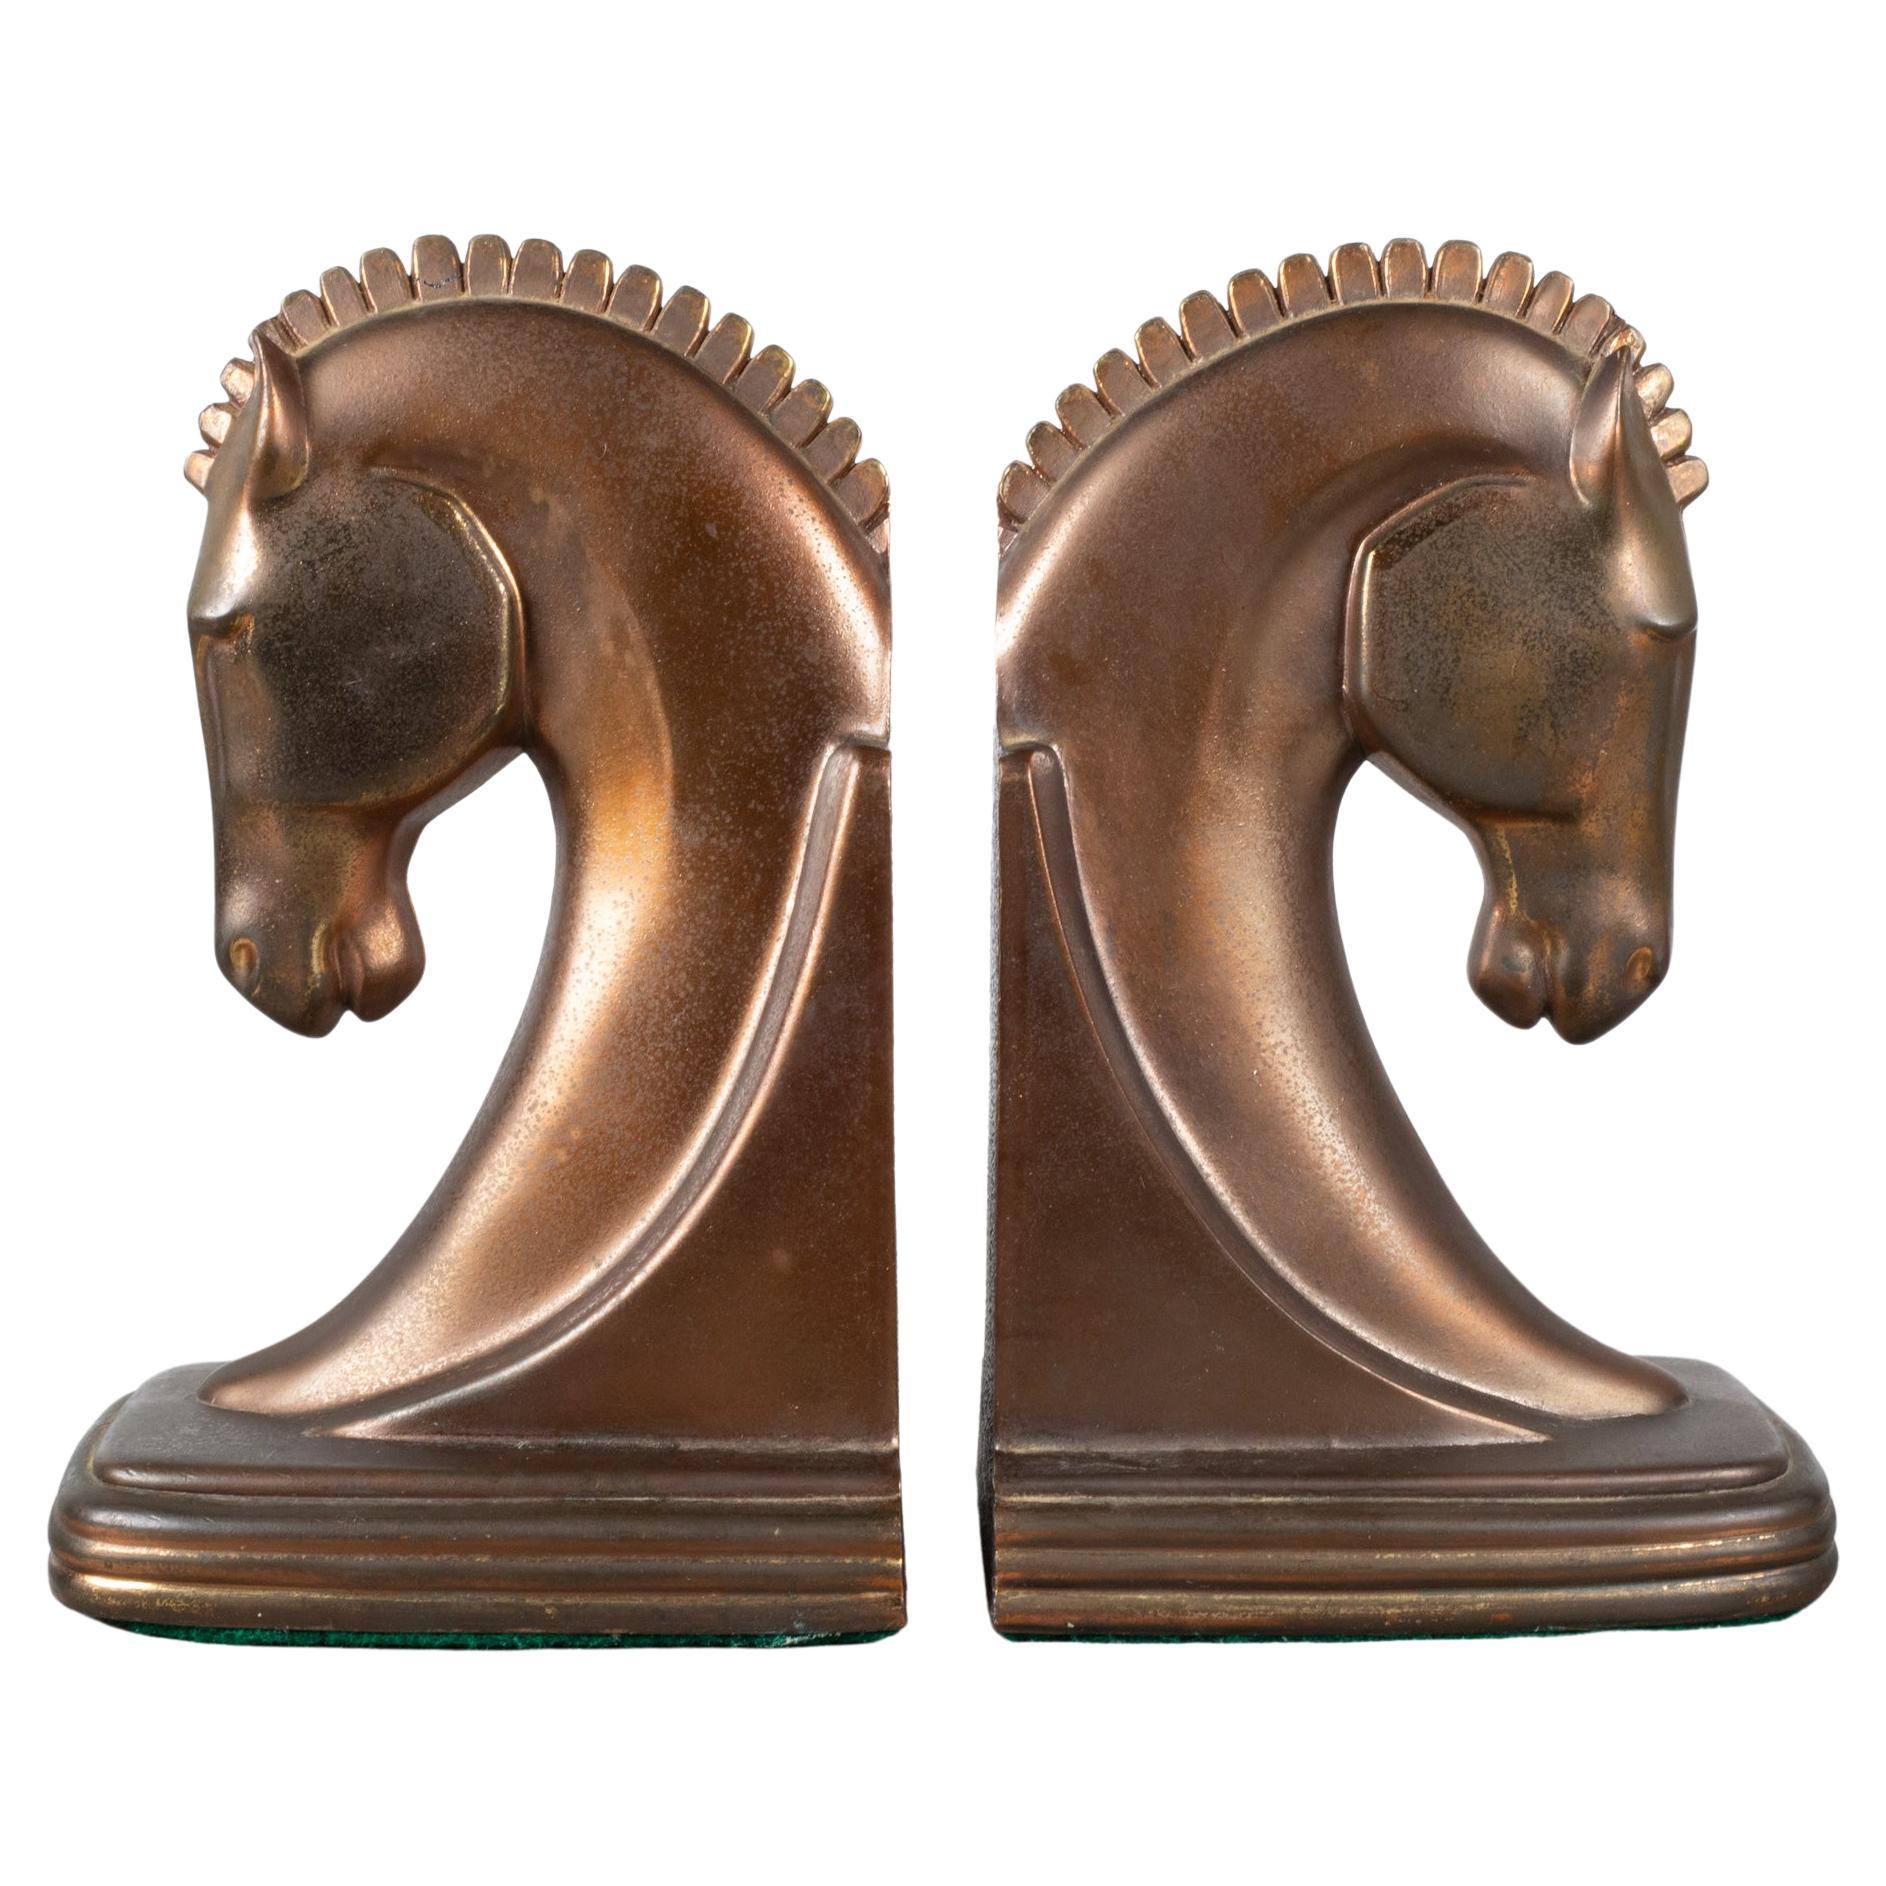 Serre-livres Trojan Horse Age Machine Age en bronze de Dodge Inc. vers 1930  (LIVRAISON GRATUITE)